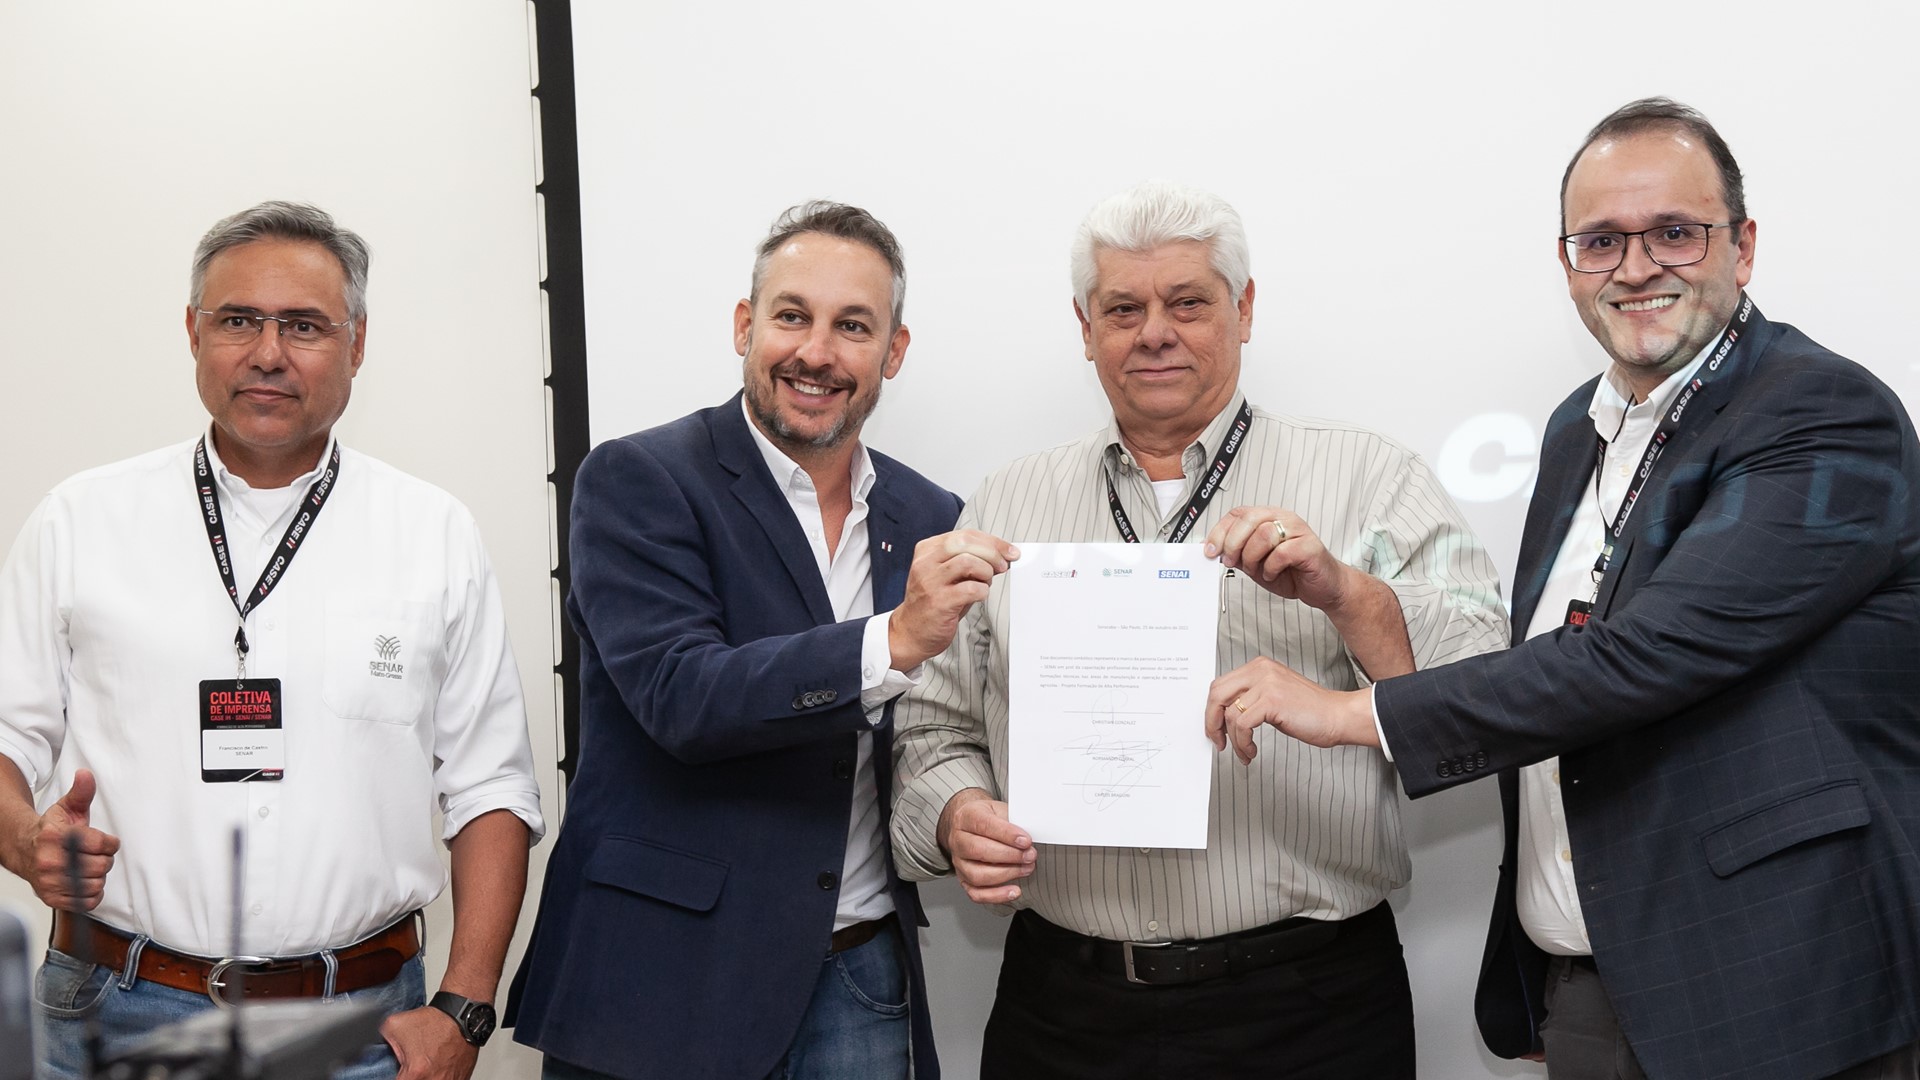 Durante a coletiva de imprensa, representantes das três marcas assinaram o contrato de parceria